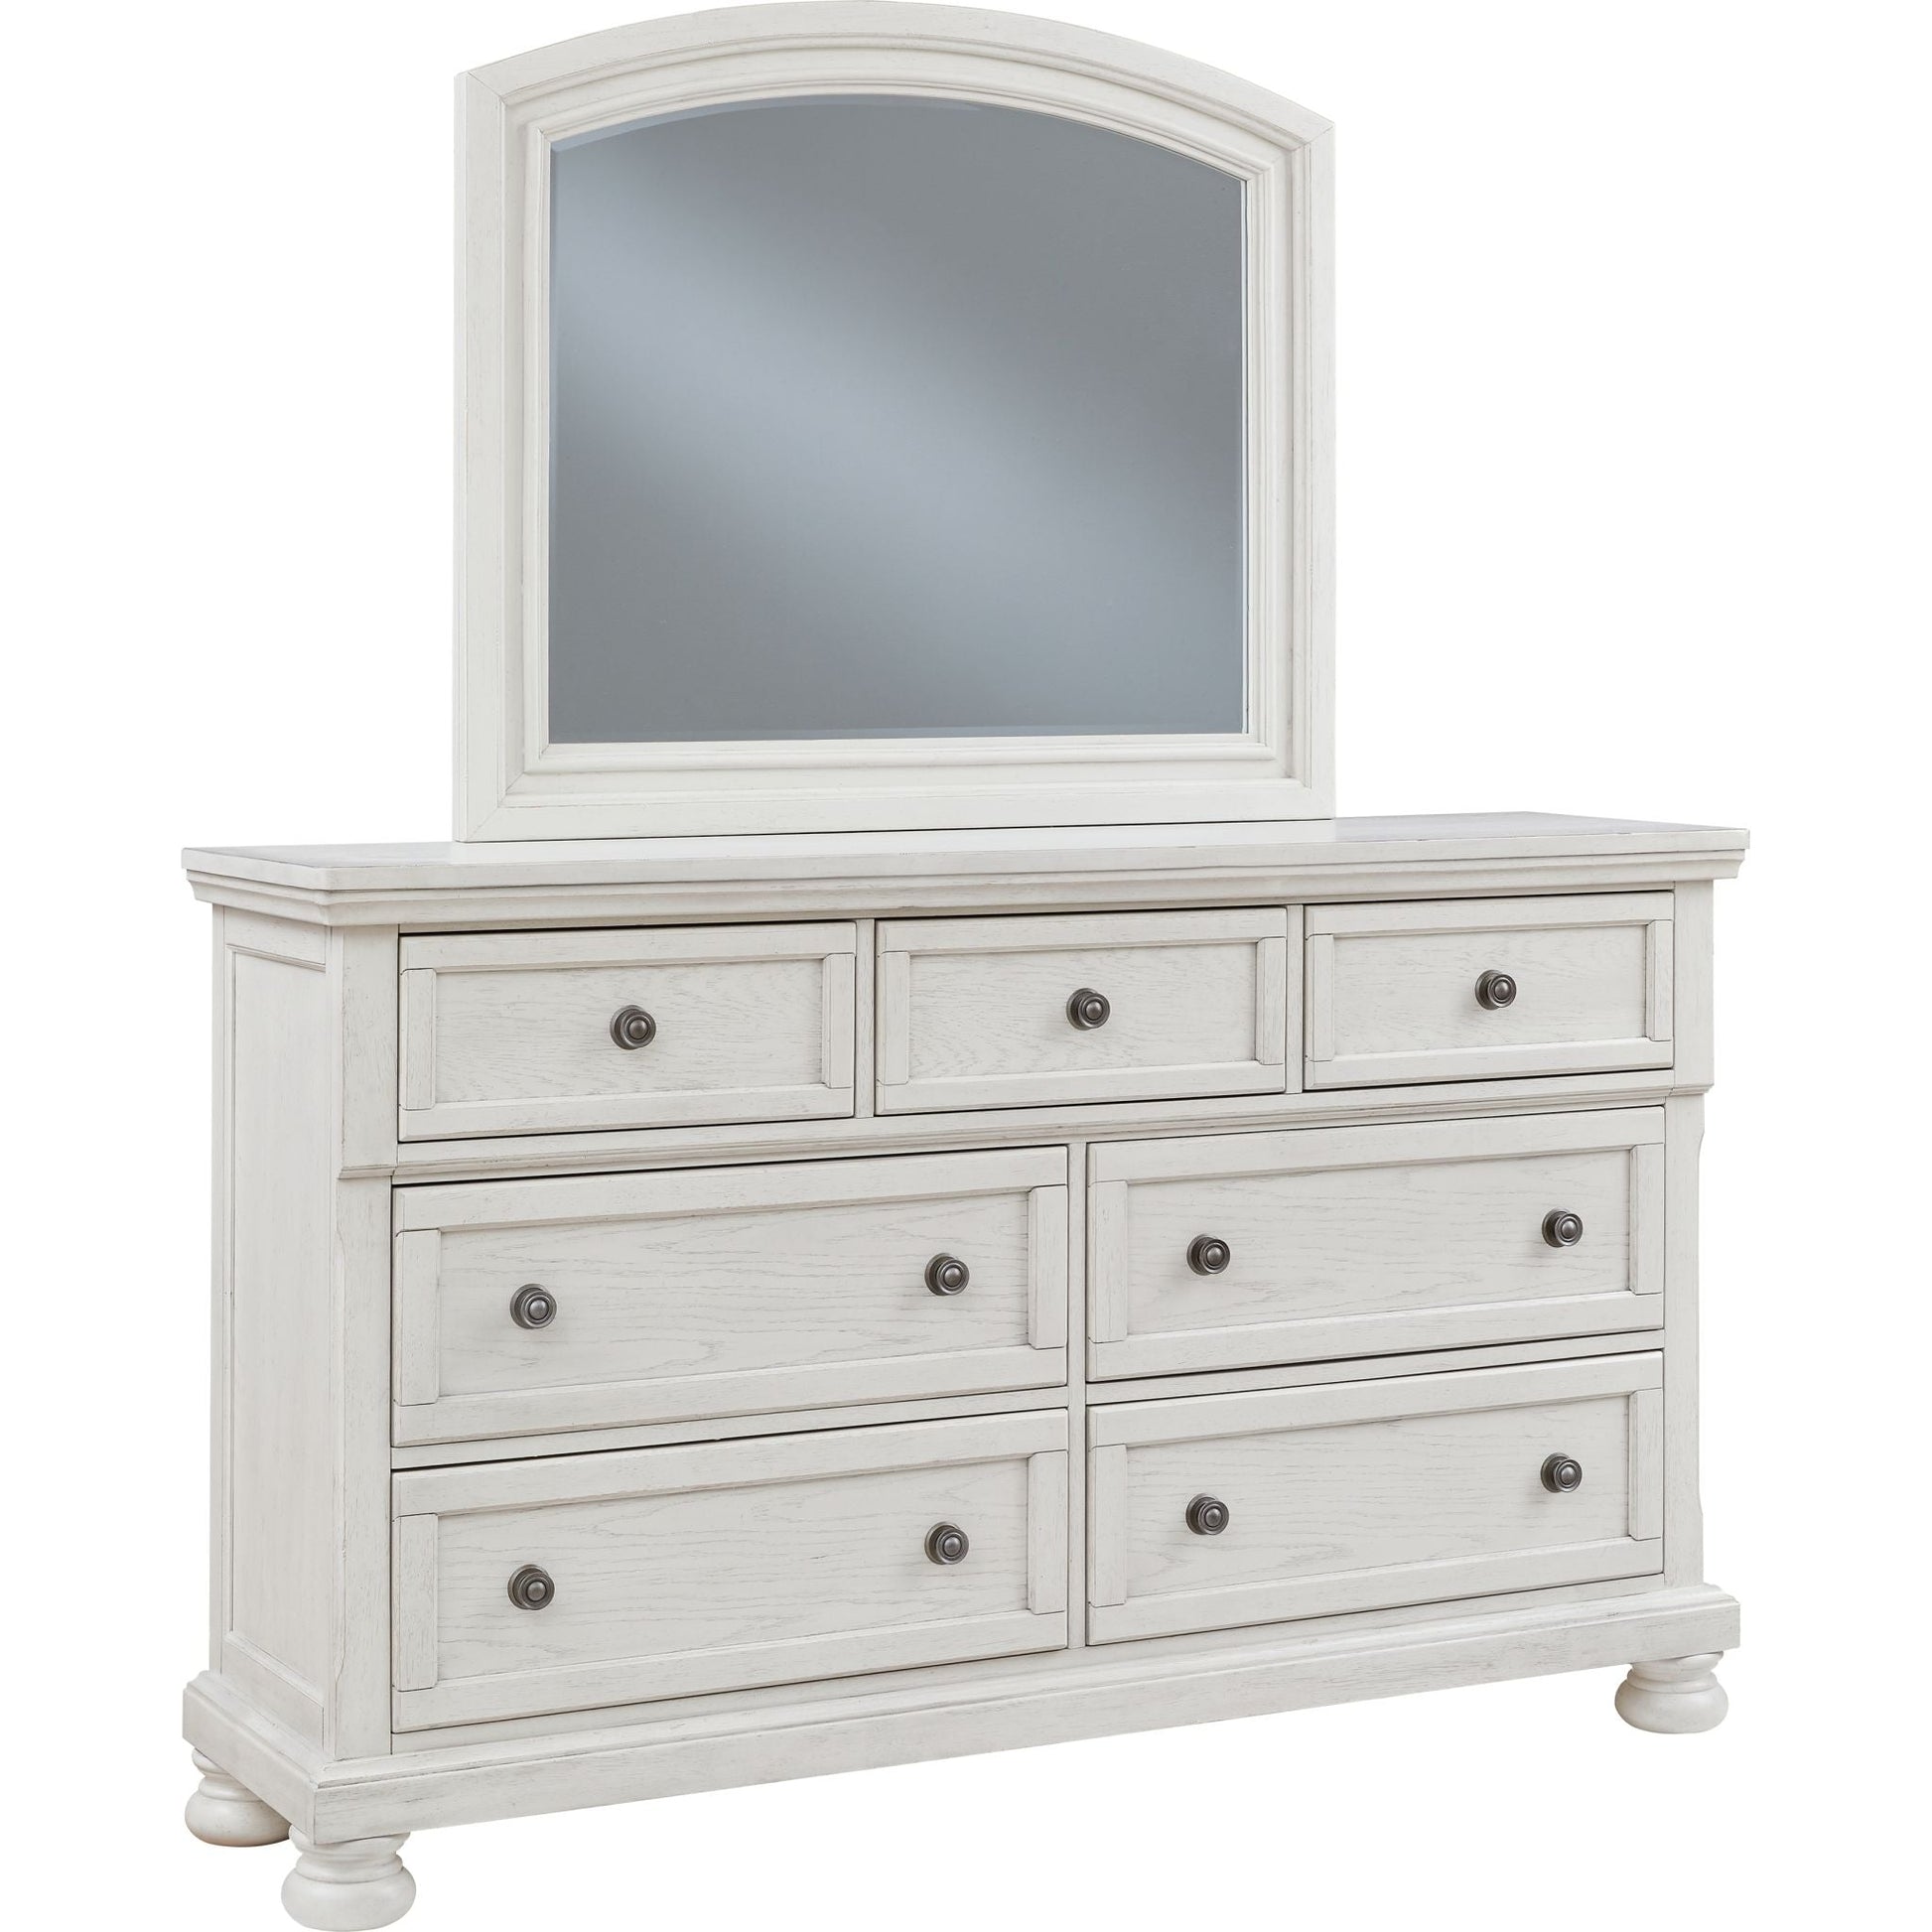 Robbinsdale Dresser and Mirror - Antique White